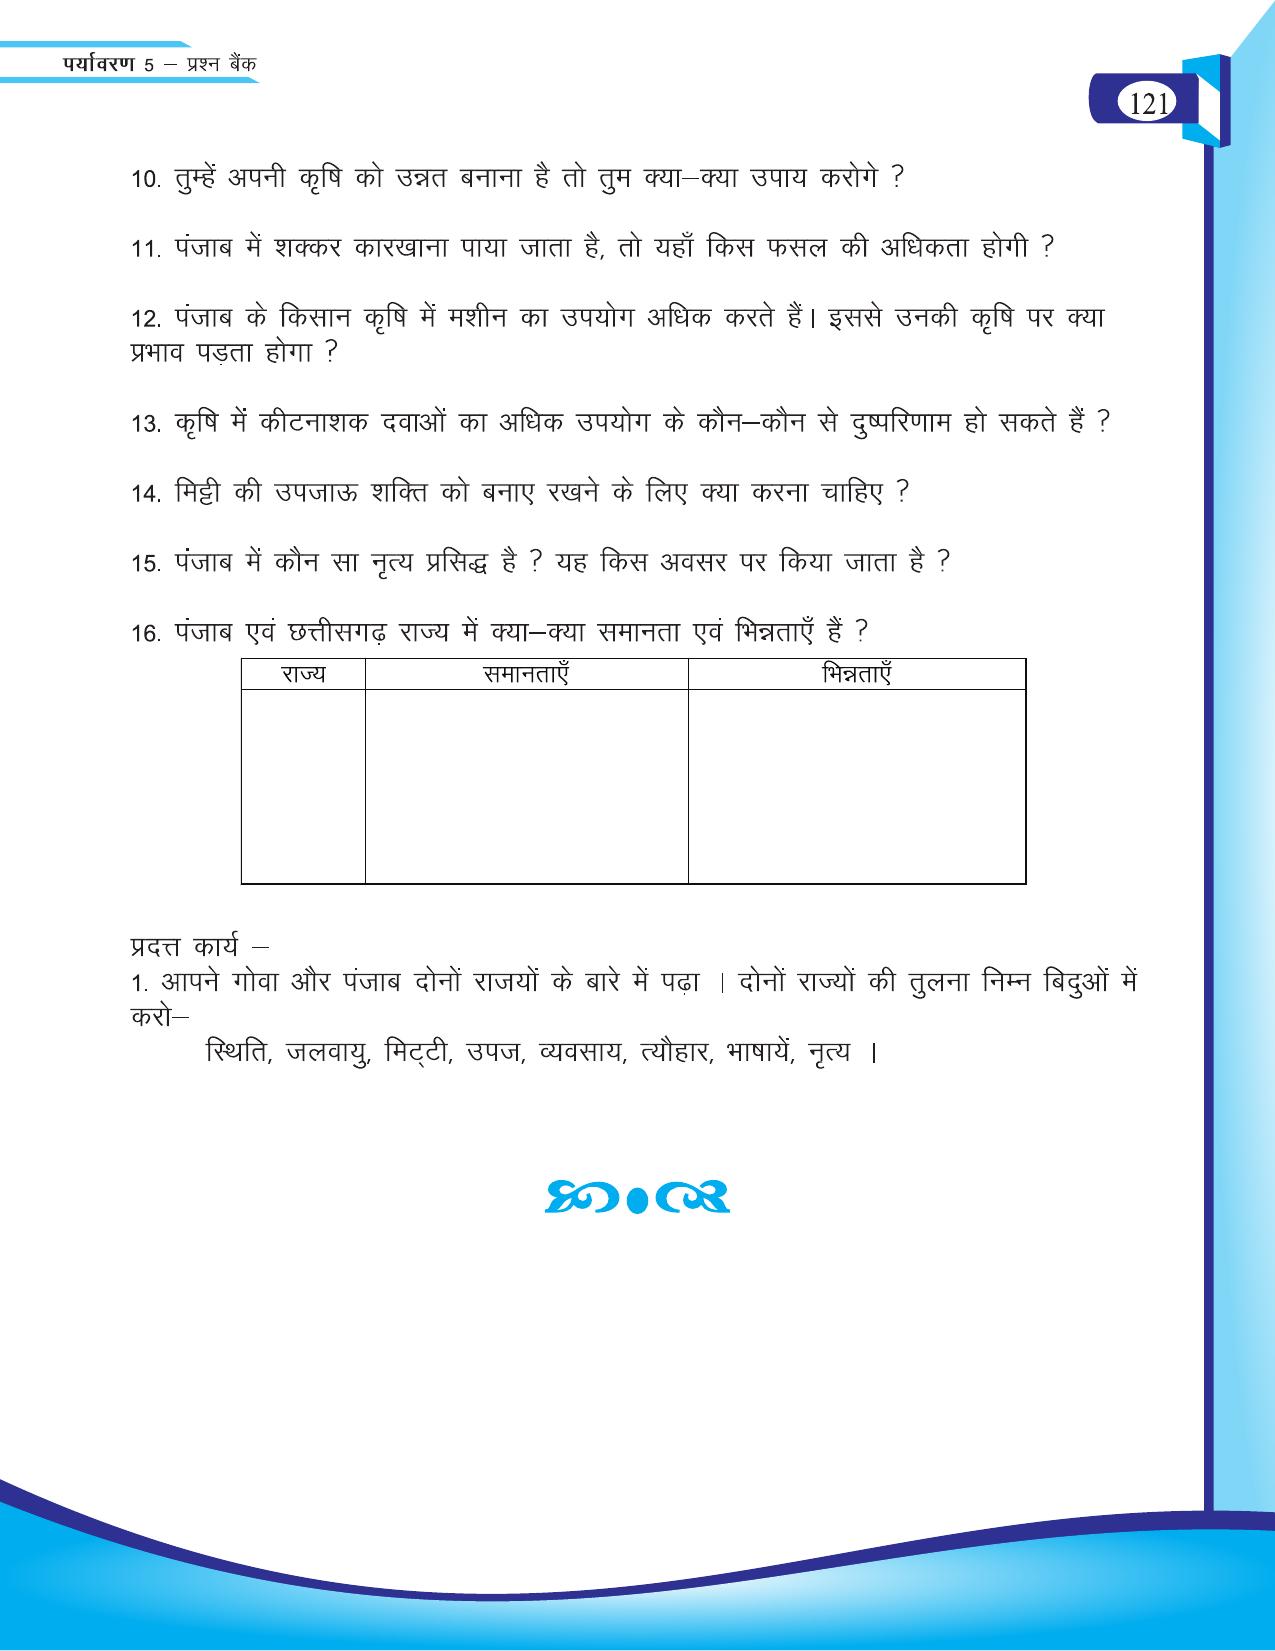 Chhattisgarh Board Class 5 EVS Question Bank 2015-16 - Page 47